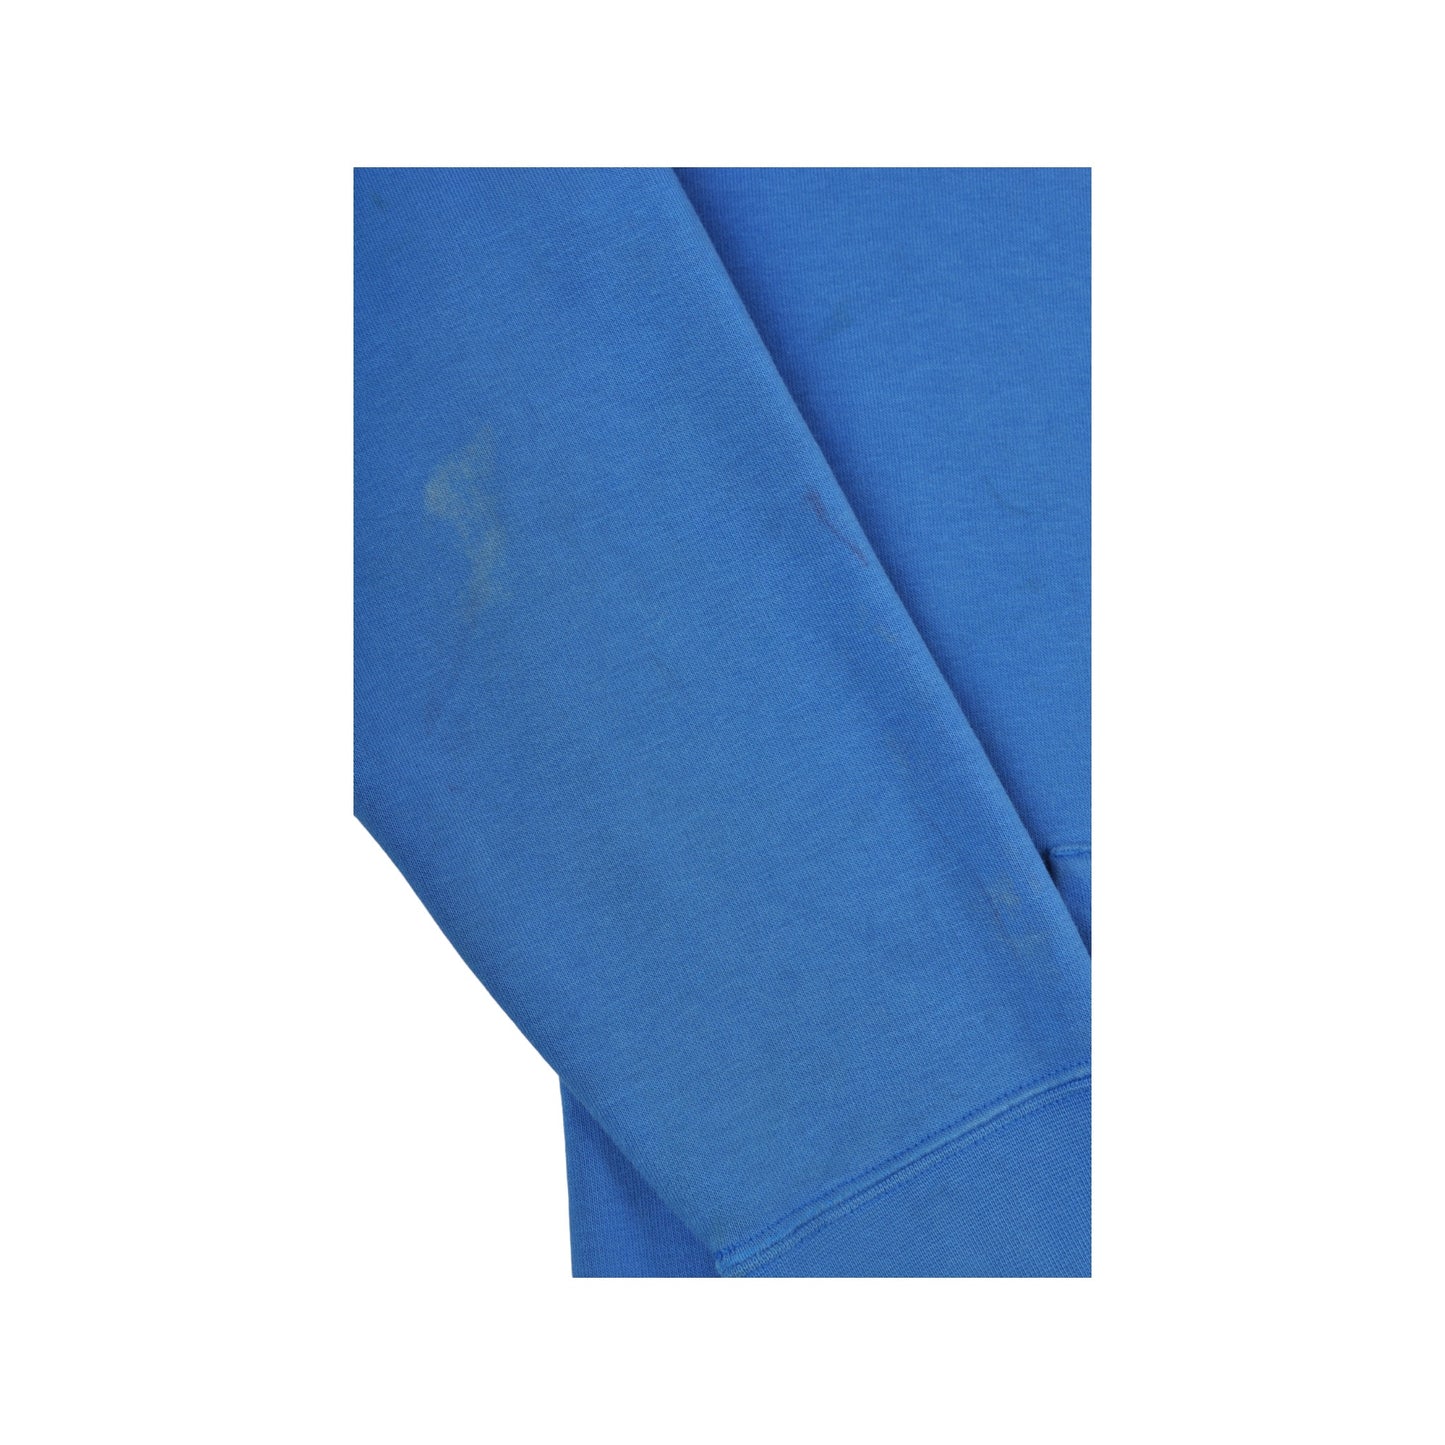 Vintage Nike Hoodie Sweatshirt Blue Small